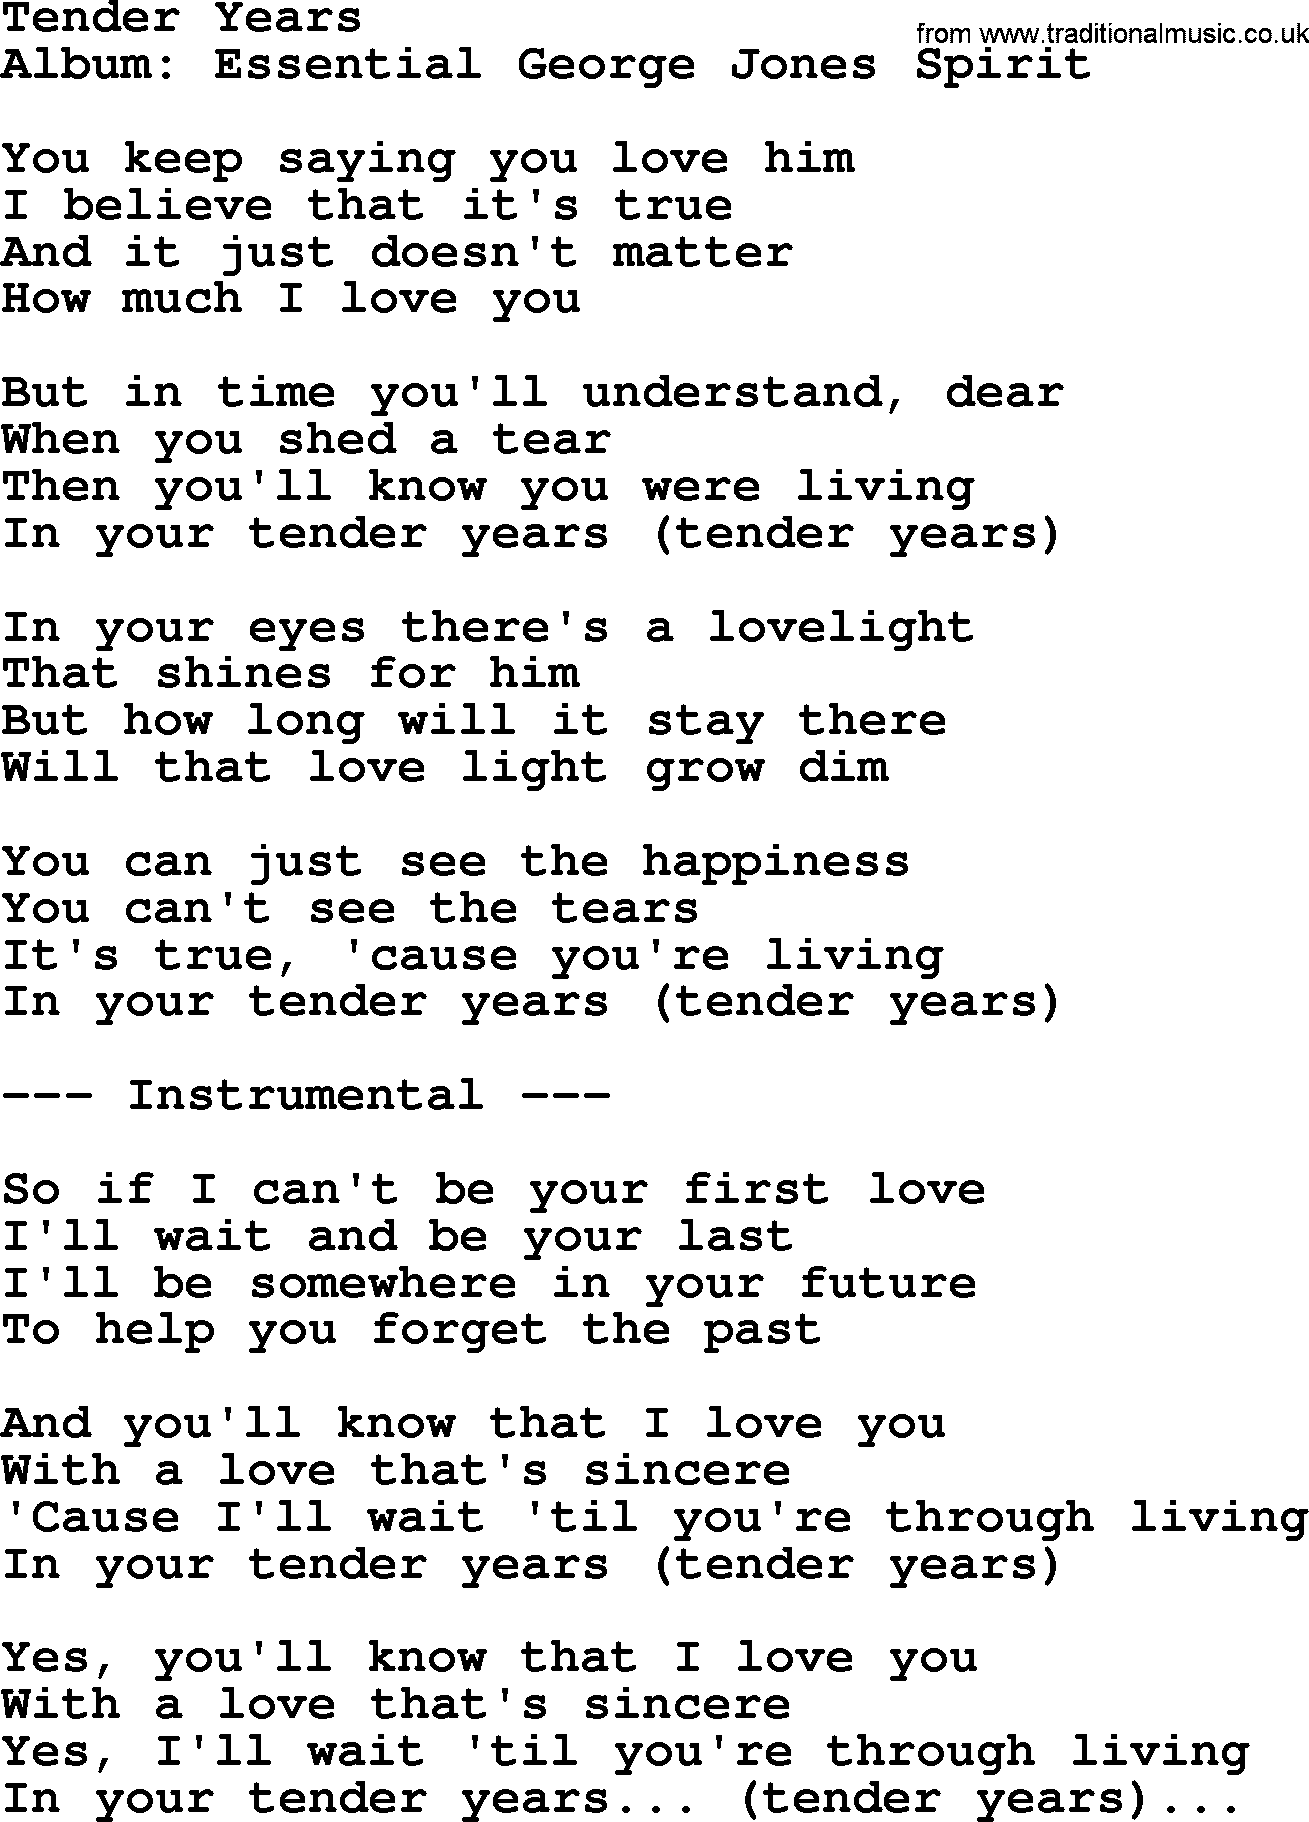 George Jones song: Tender Years, lyrics